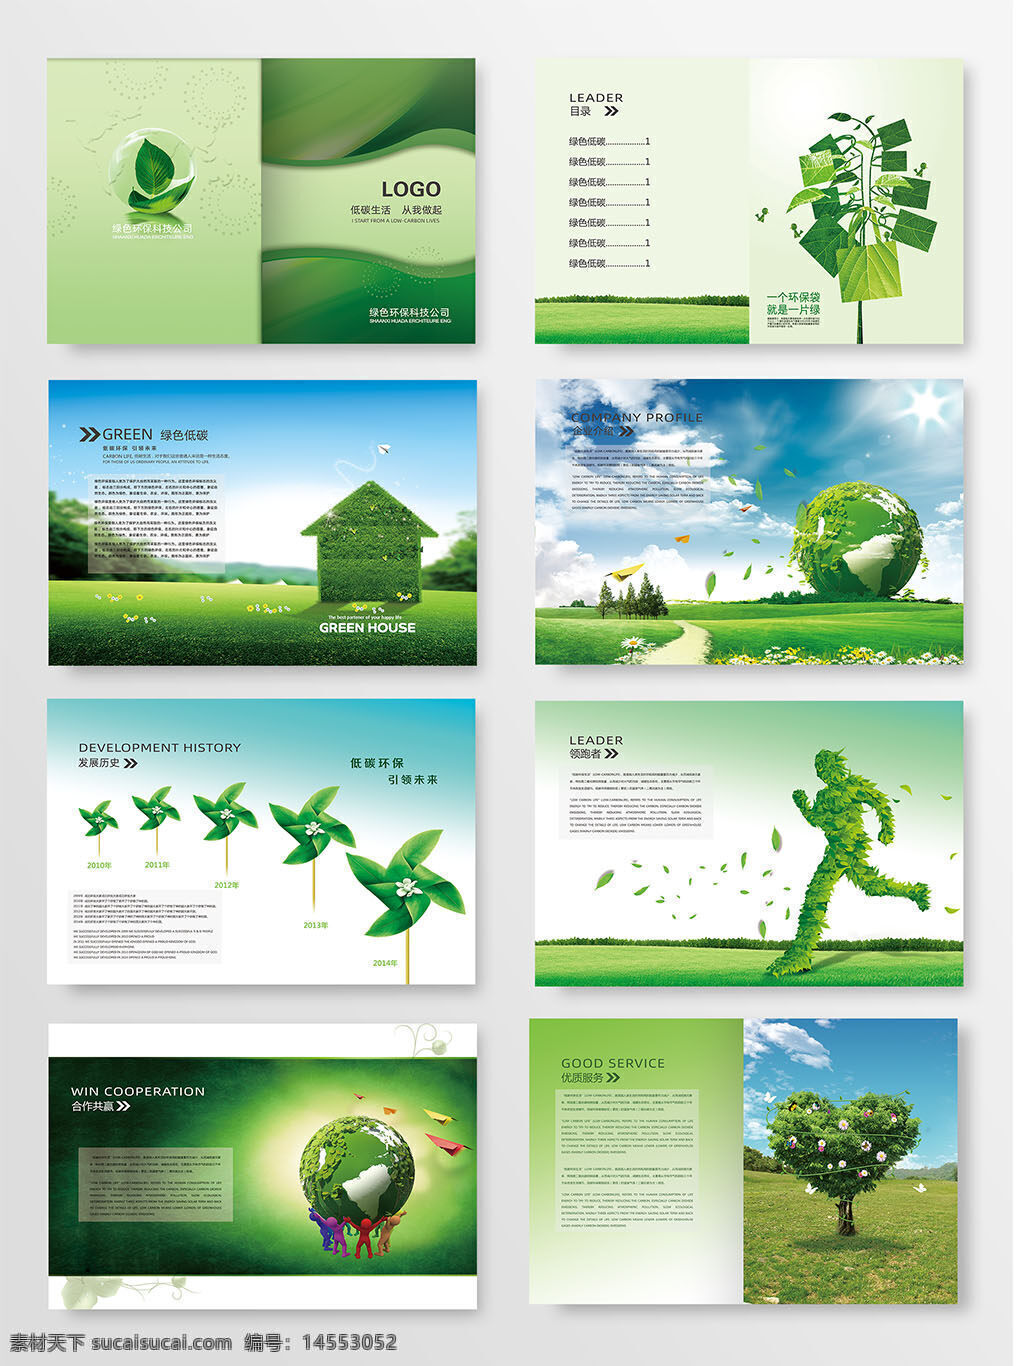 企业画册 环保画册 公司画册 画册设计 绿色画册